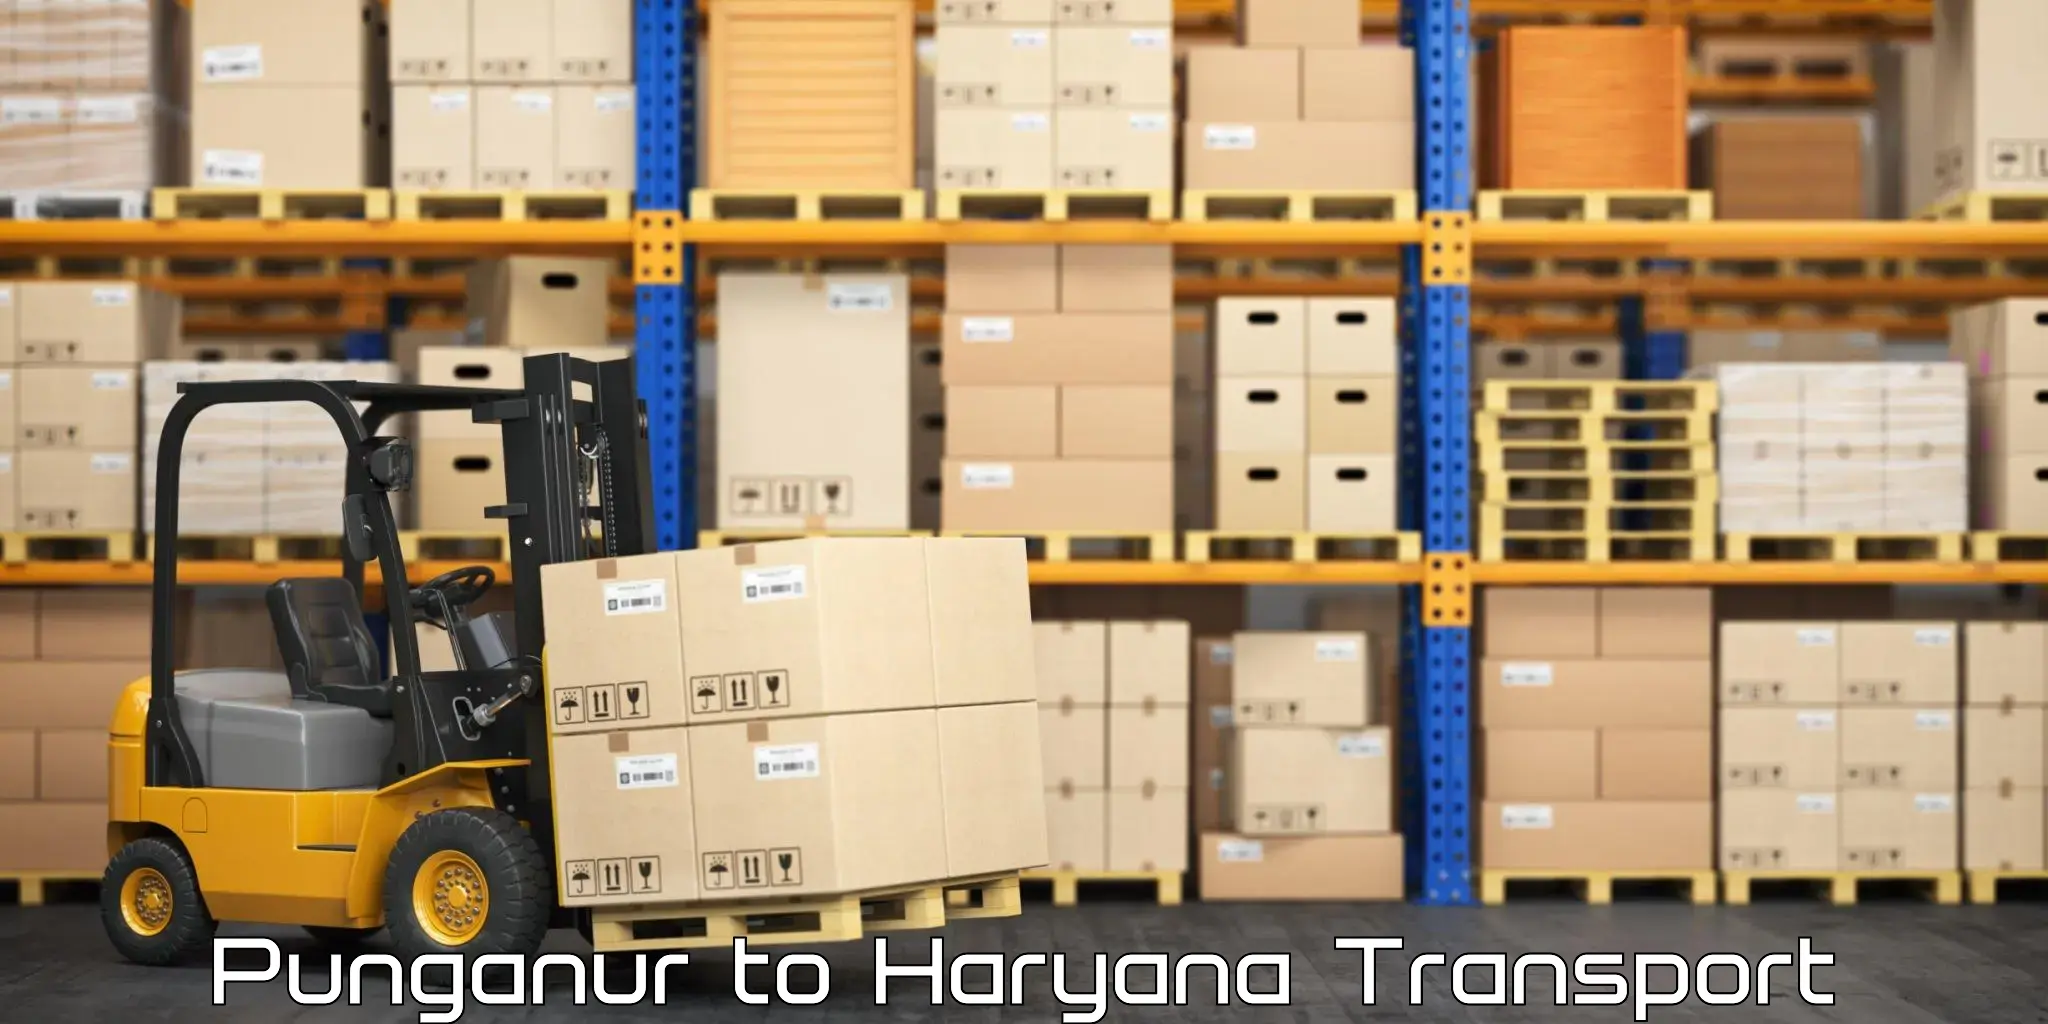 Cargo transport services Punganur to Charkhi Dadri